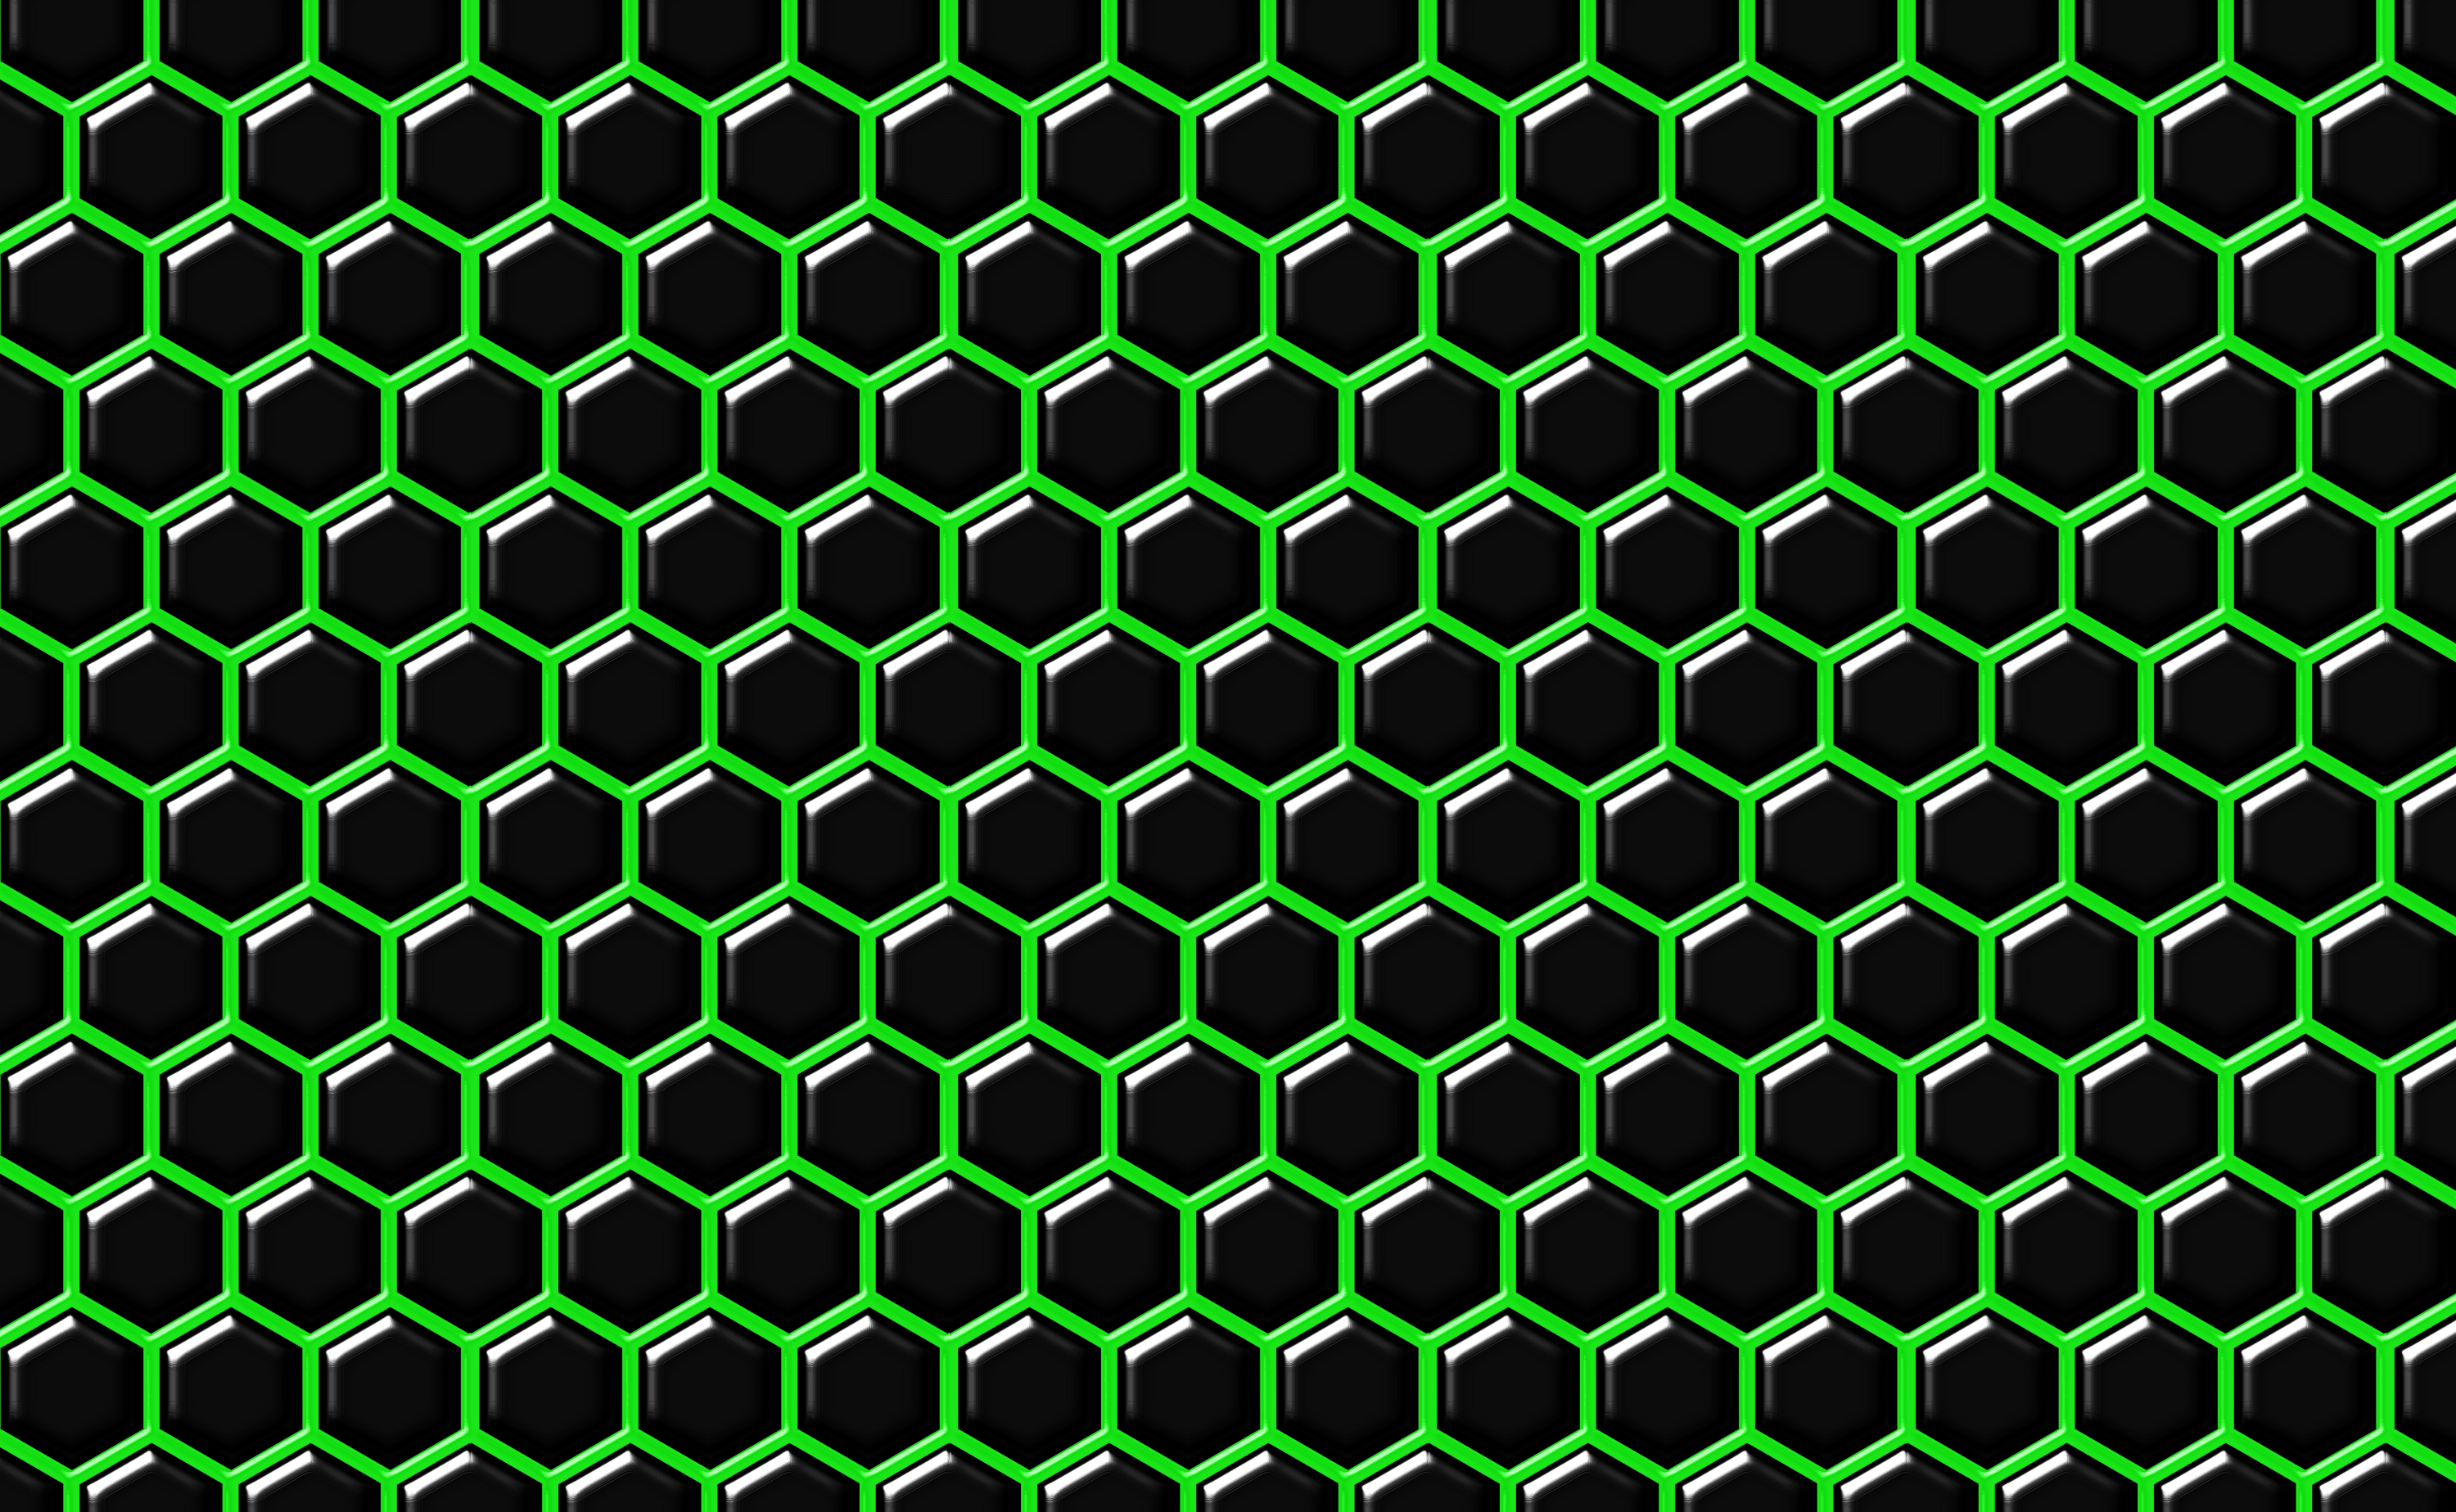 Hình nền Hexagon màu xanh, mang lại cảm giác tươi mát, sôi động và riêng biệt. Đây là hình ảnh rất tuyệt vời để cập nhật màn hình của bạn. Hãy xem ngay và khám phá nền tảng độc đáo này.